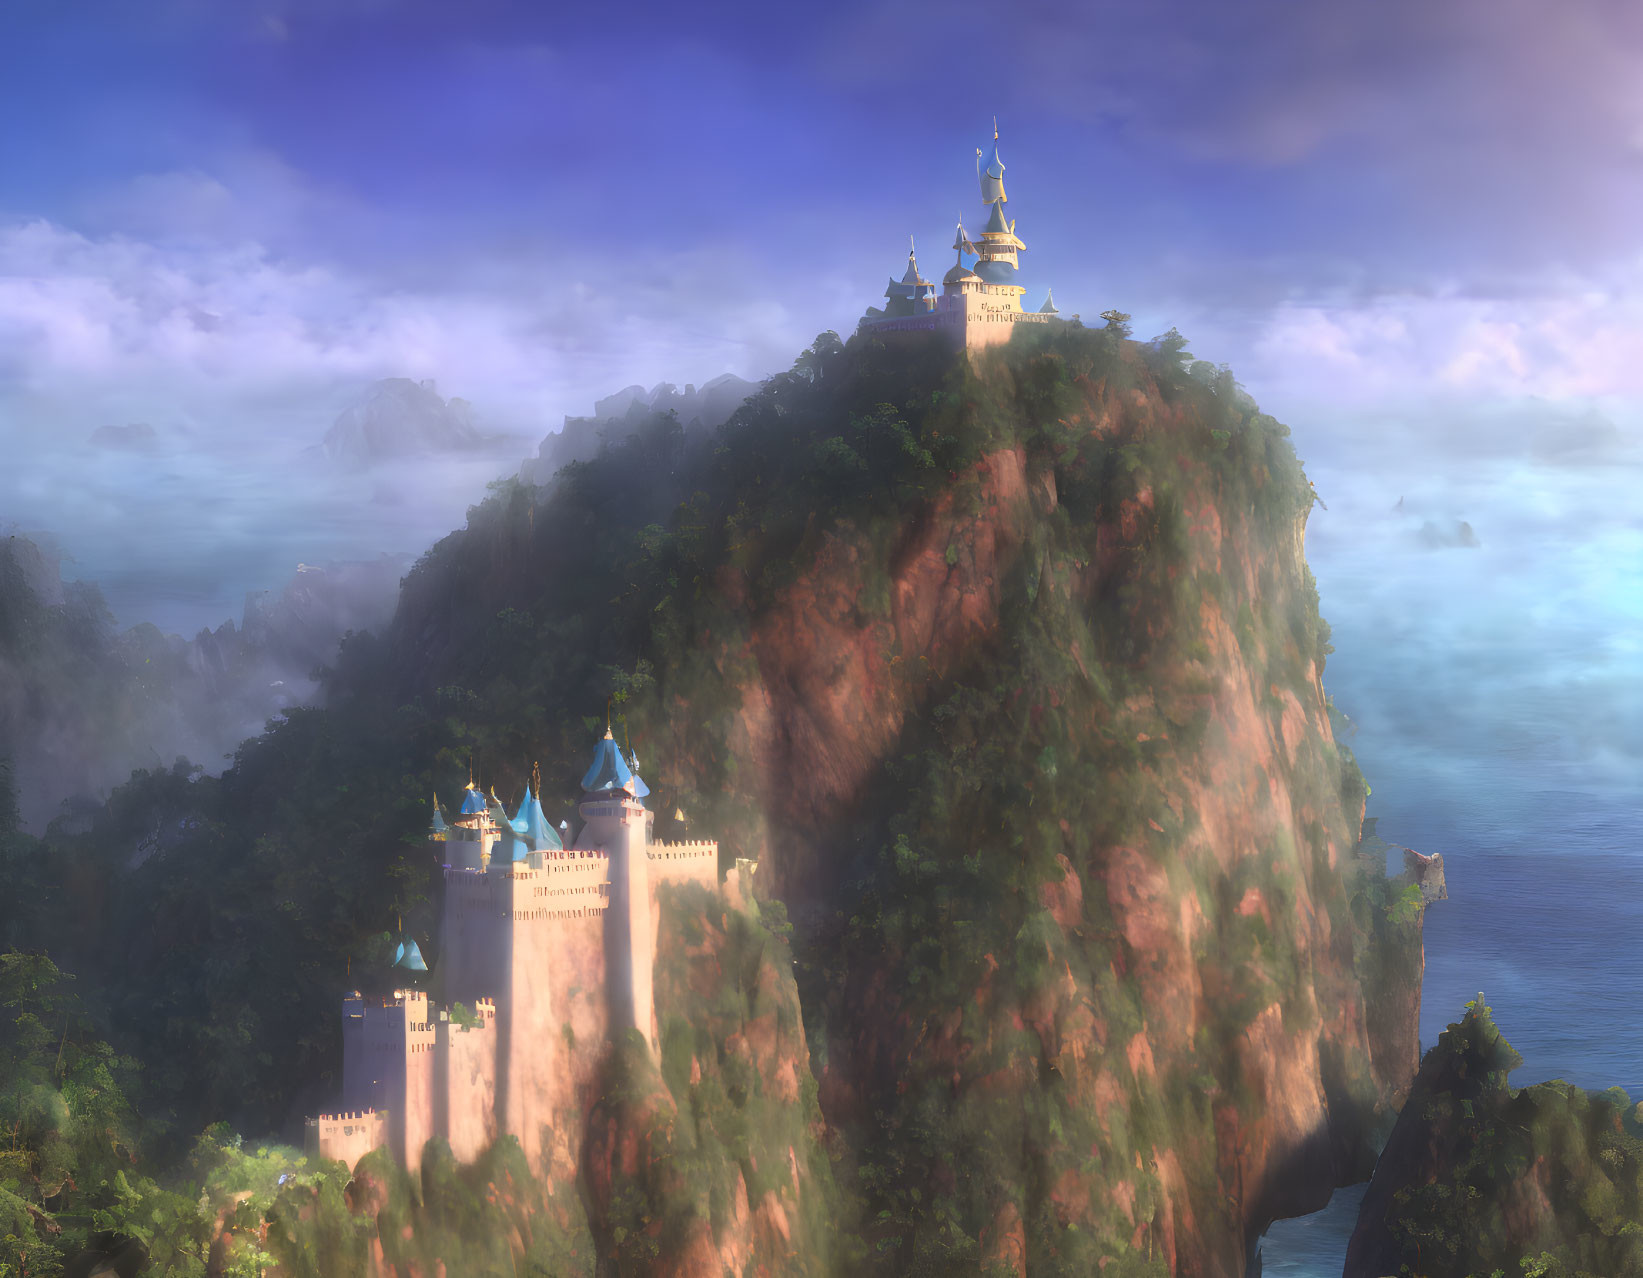 Majestic fantasy castle on cliff in lush landscape